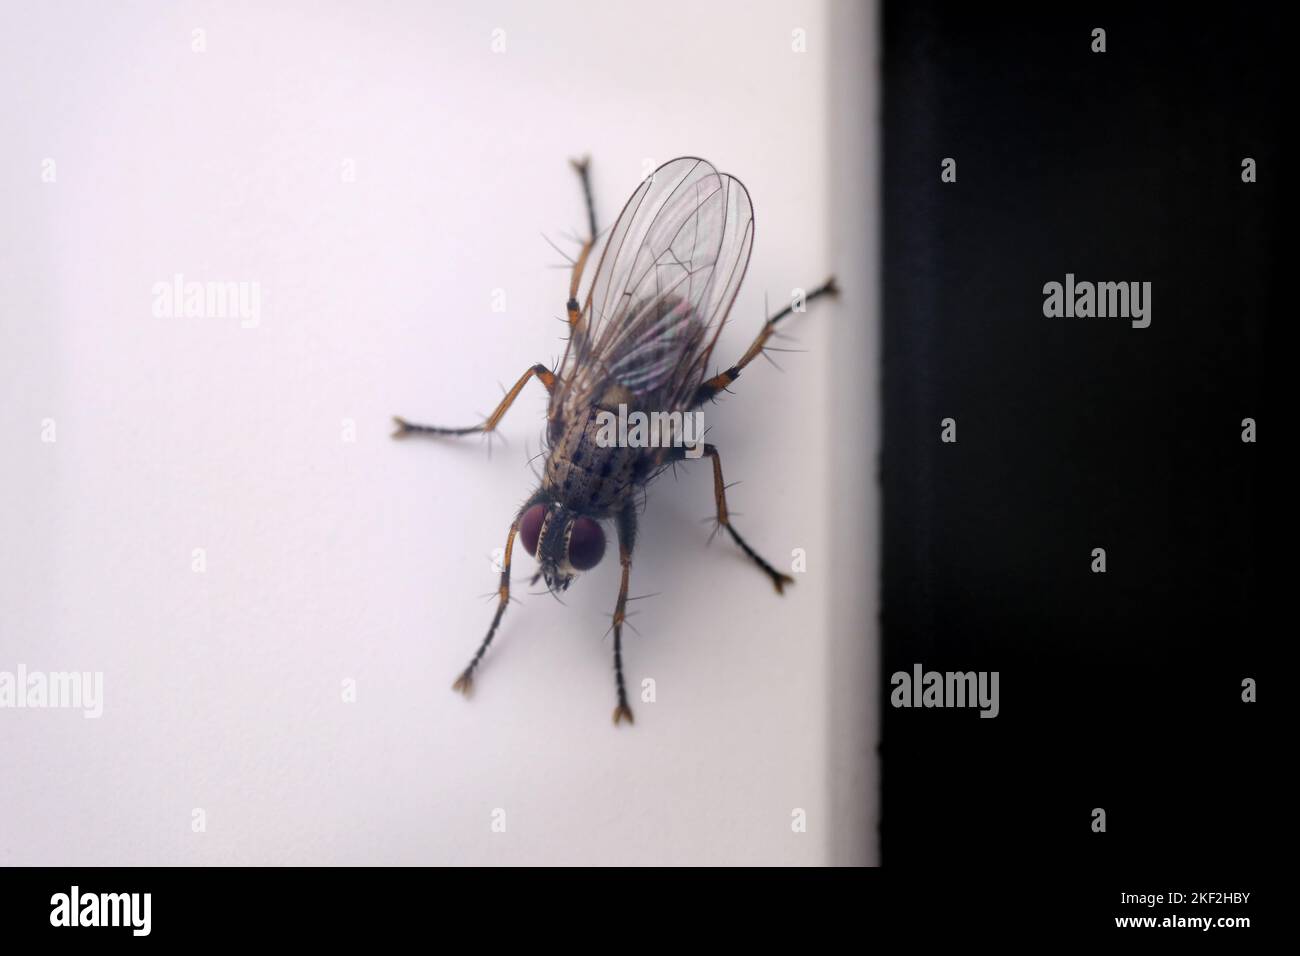 Volare appollaiato sul vano porta in UPVC. Guardando mentre lo fotografo. Immagine macro di insetti volanti. Foto Stock